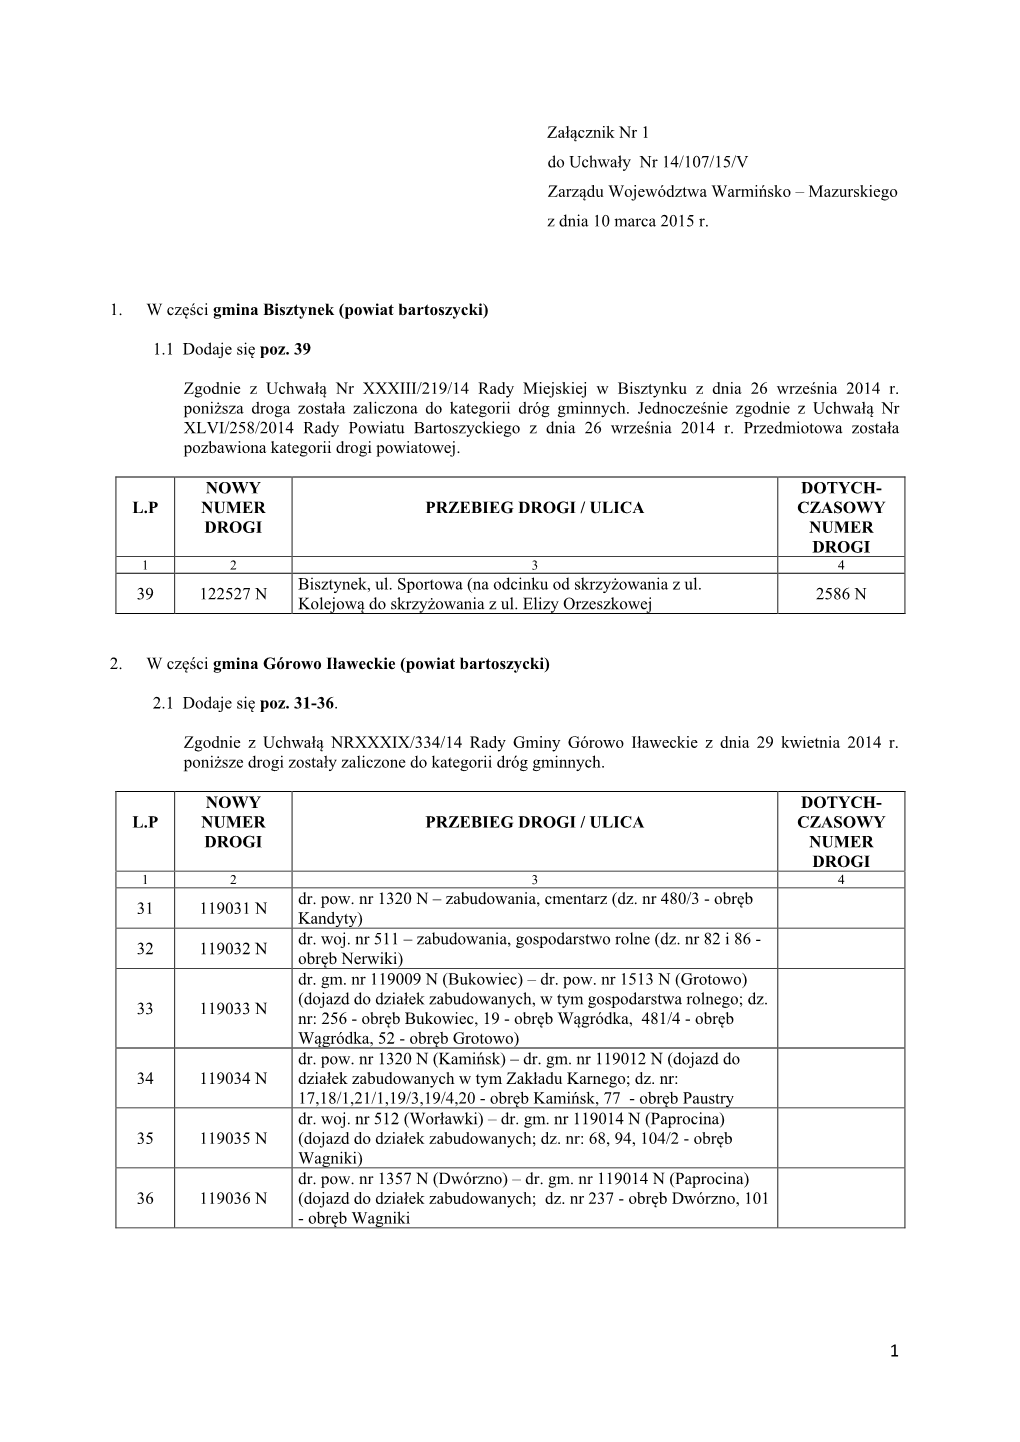 Załącznik Nr 1 Do Uchwały Nr 14/107/15/V Zarządu Województwa Warmińsko – Mazurskiego Z Dnia 10 Marca 2015 R